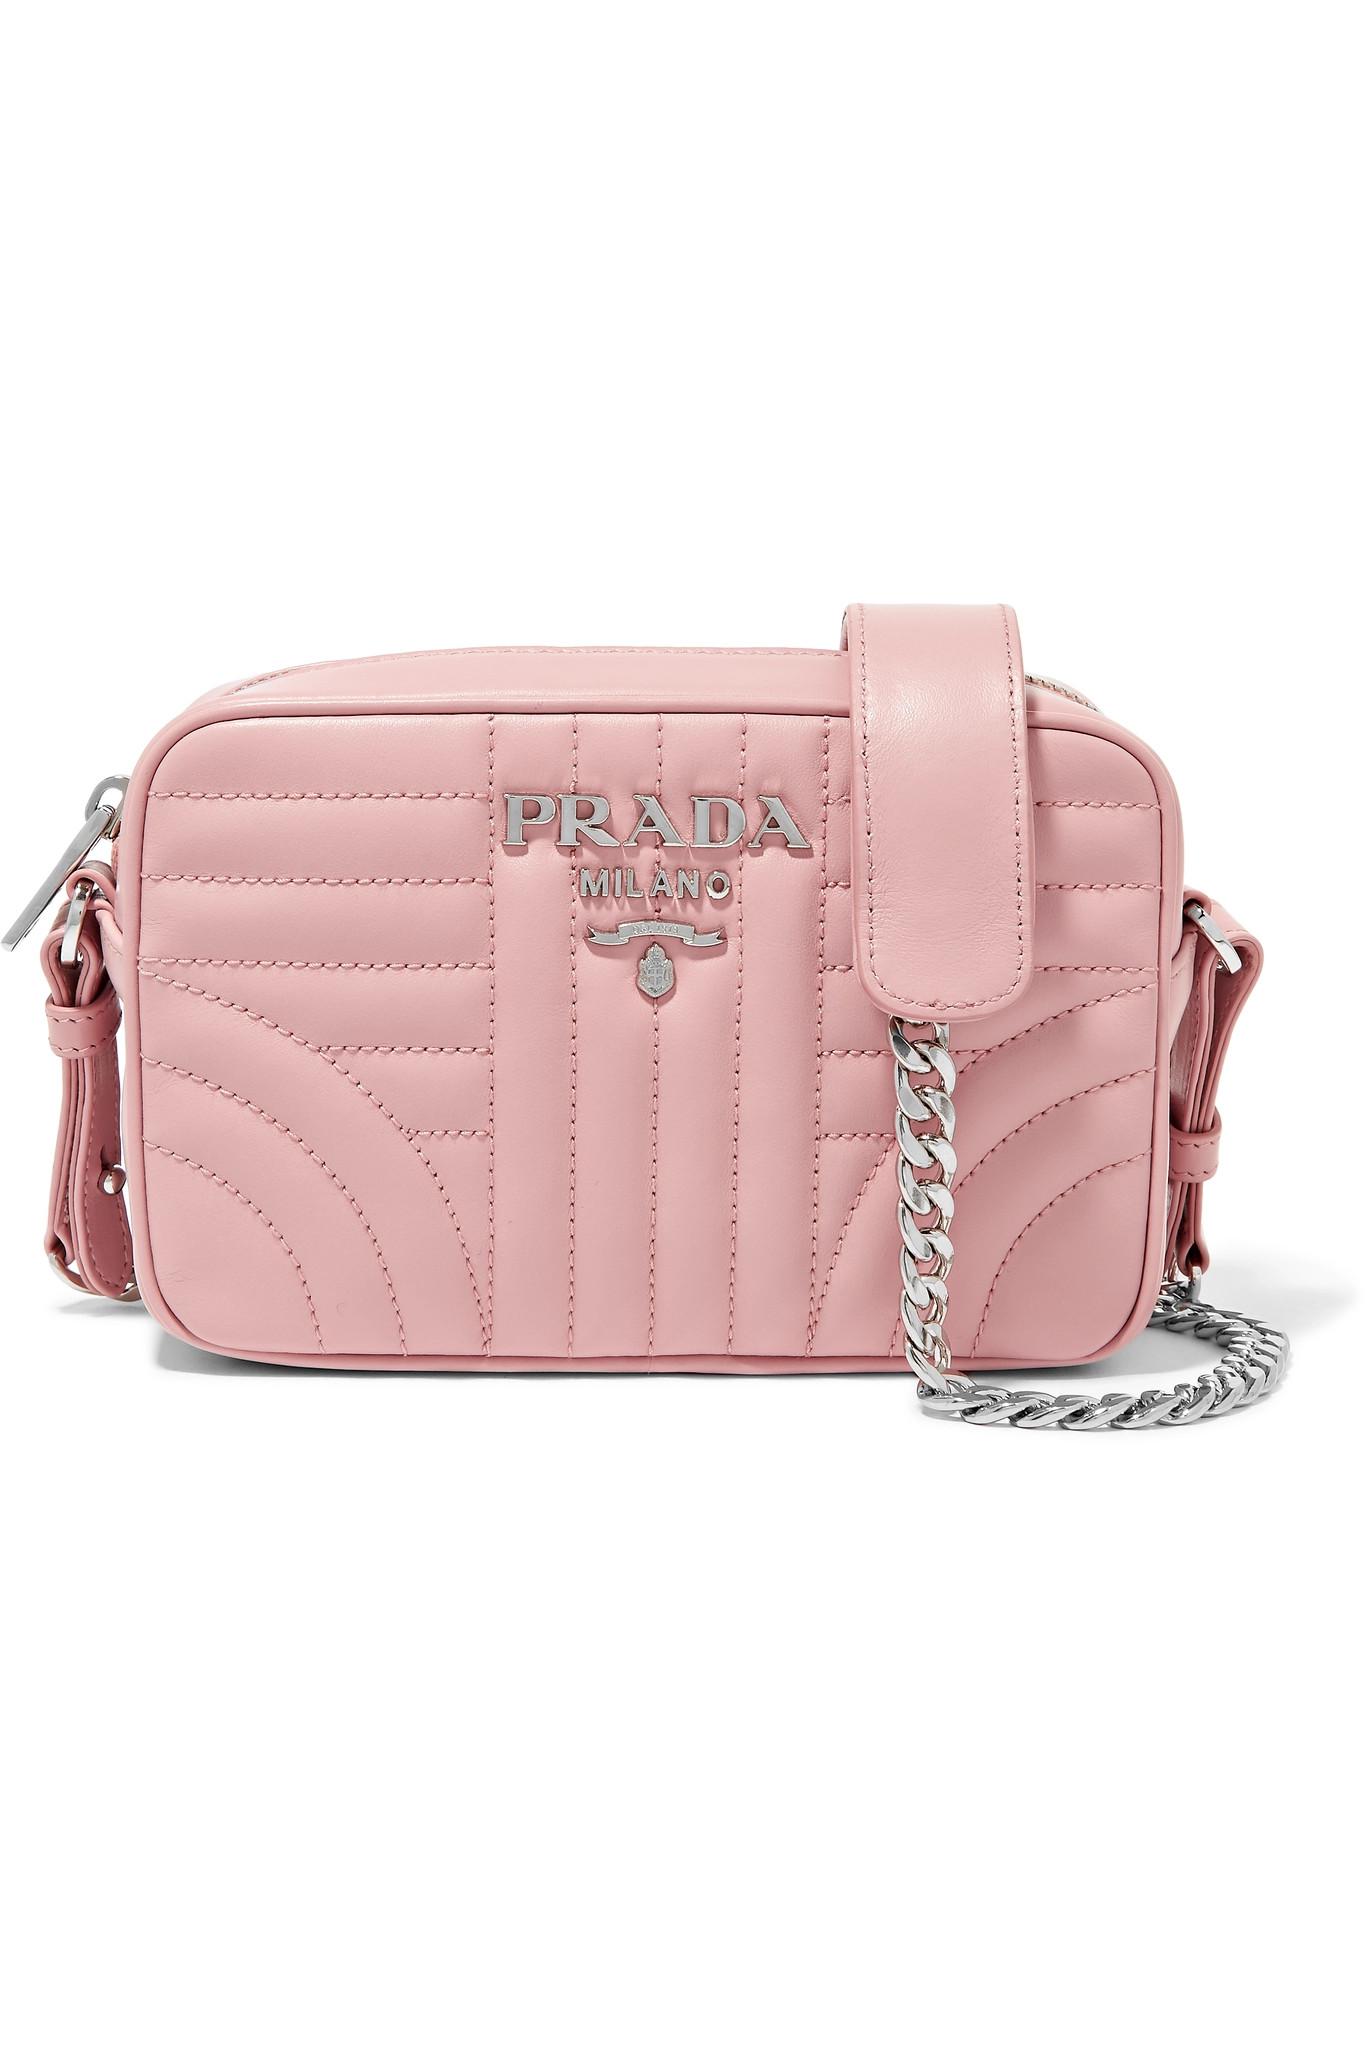 prada camera bag pink